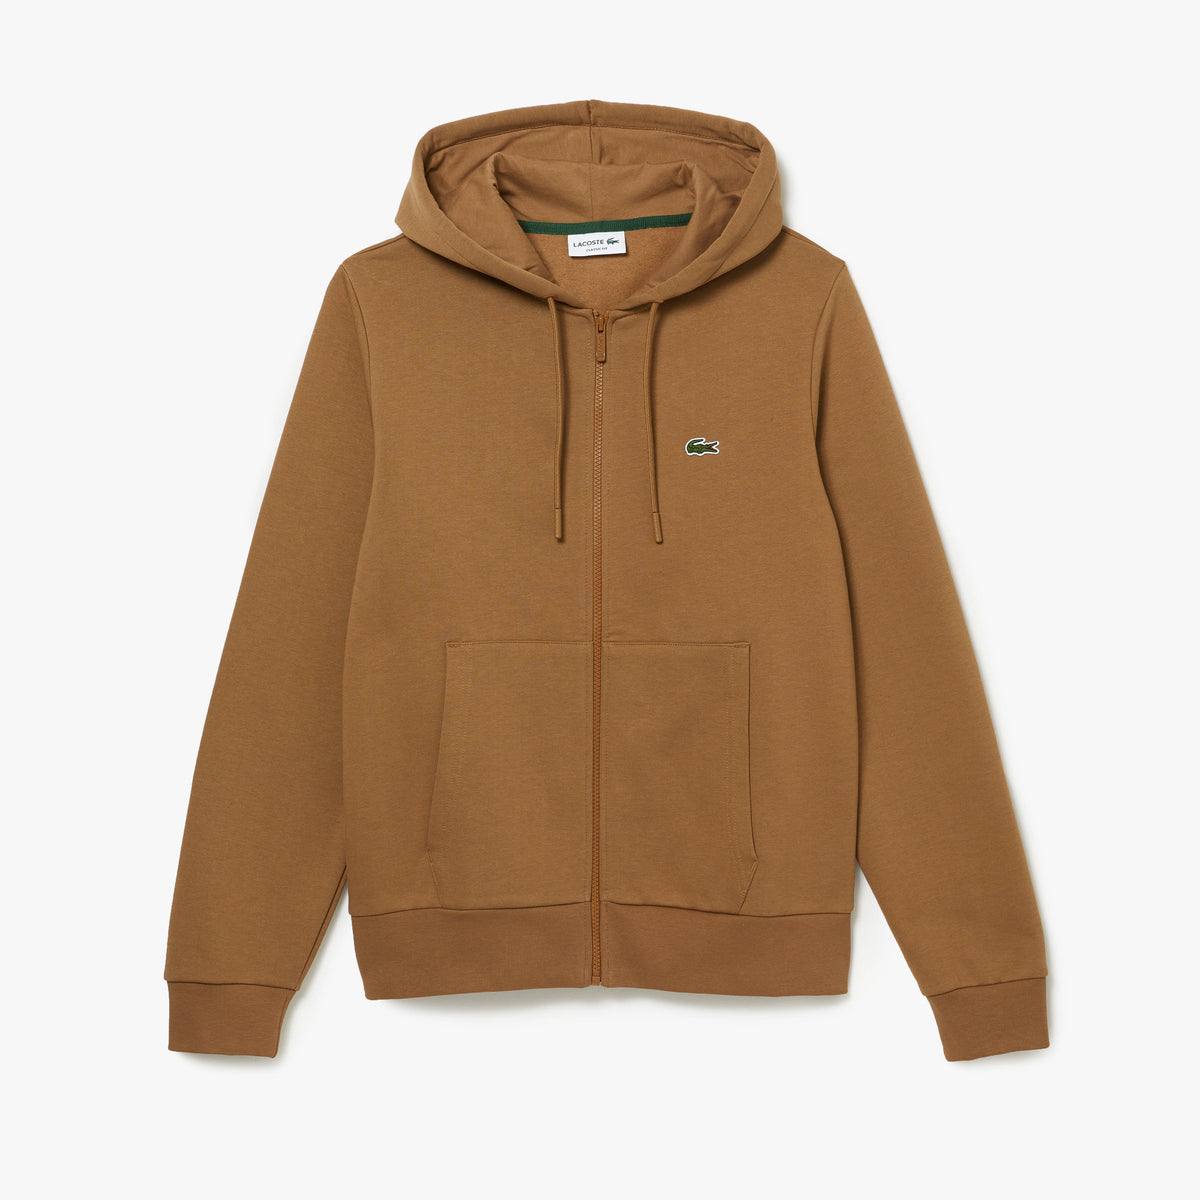 Lacoste - Kangaroo Pocket Fleece Sweatshirt - Brown